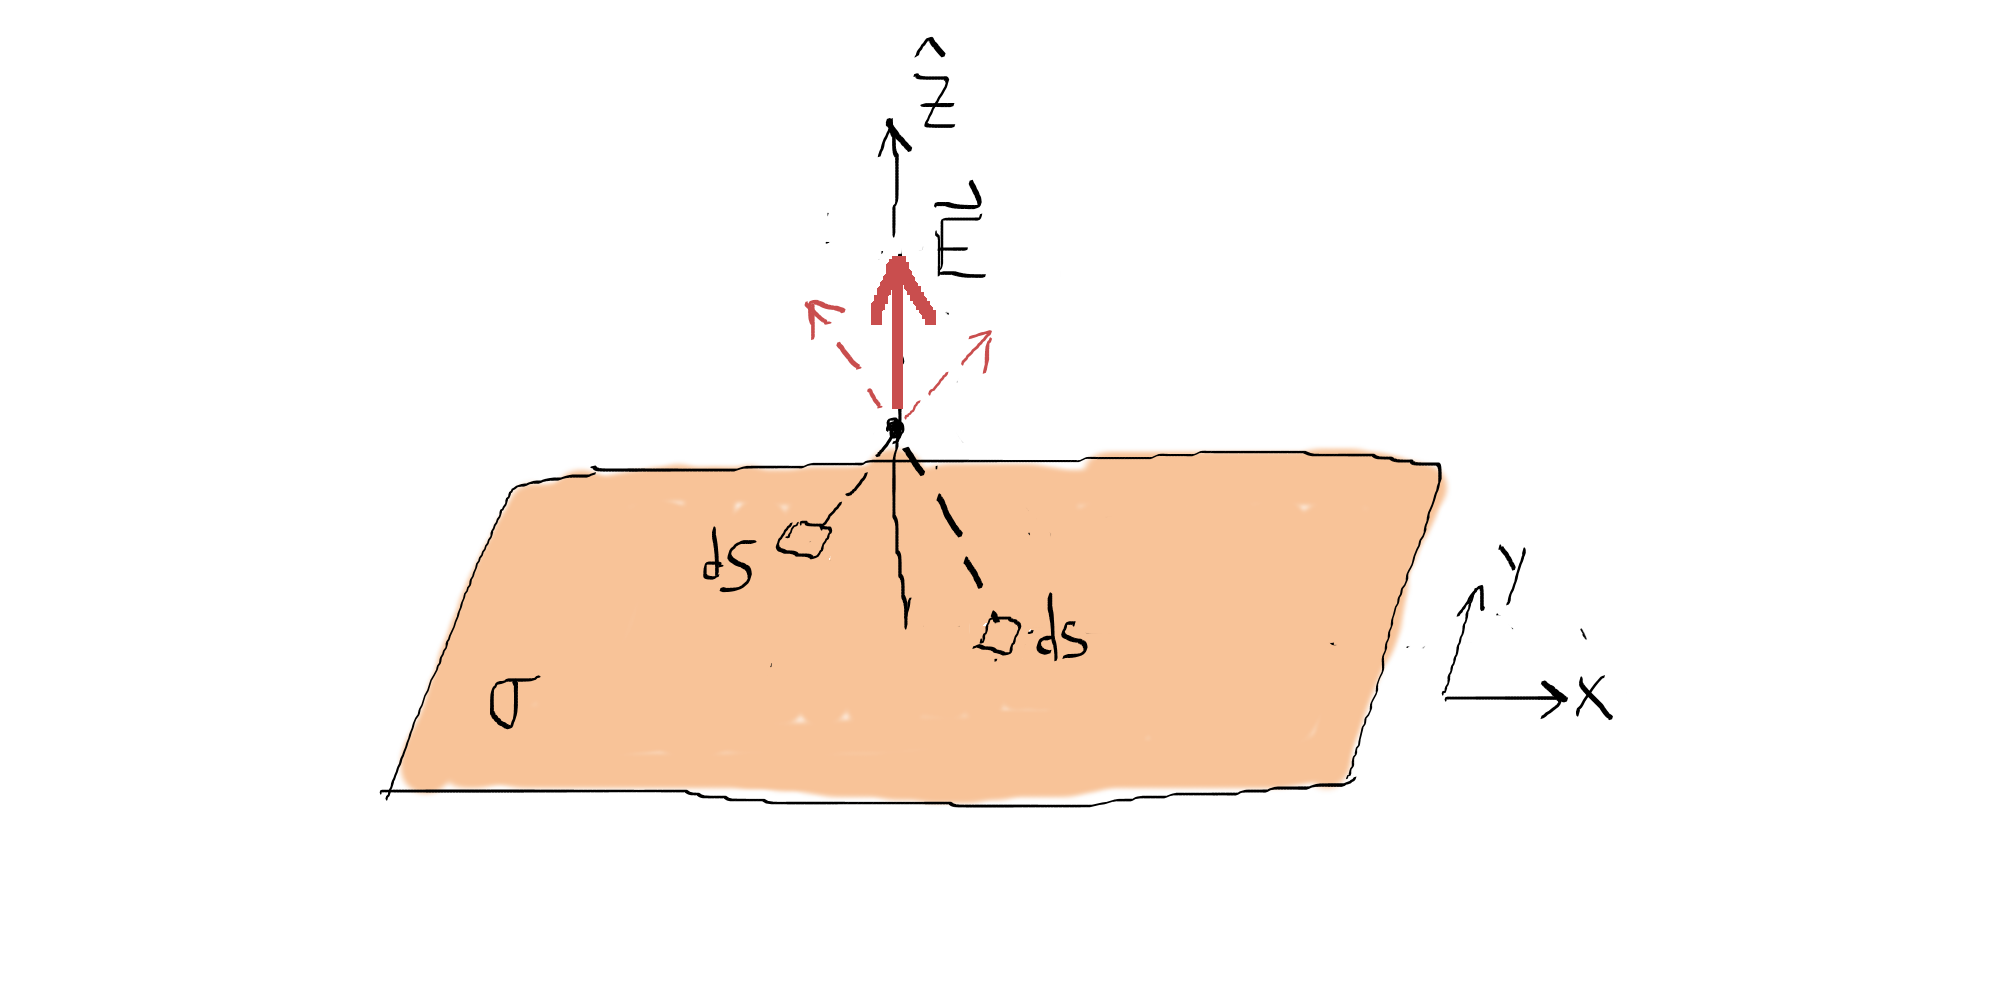 2.3 Ley de Gauss del campo electrostático (1835) 49 Ejemplo 2.4 Campo de un plano infinito de carga. Consideremos el plano infinito z = 0 con densidad superficial de carga uniforme σ > 0.